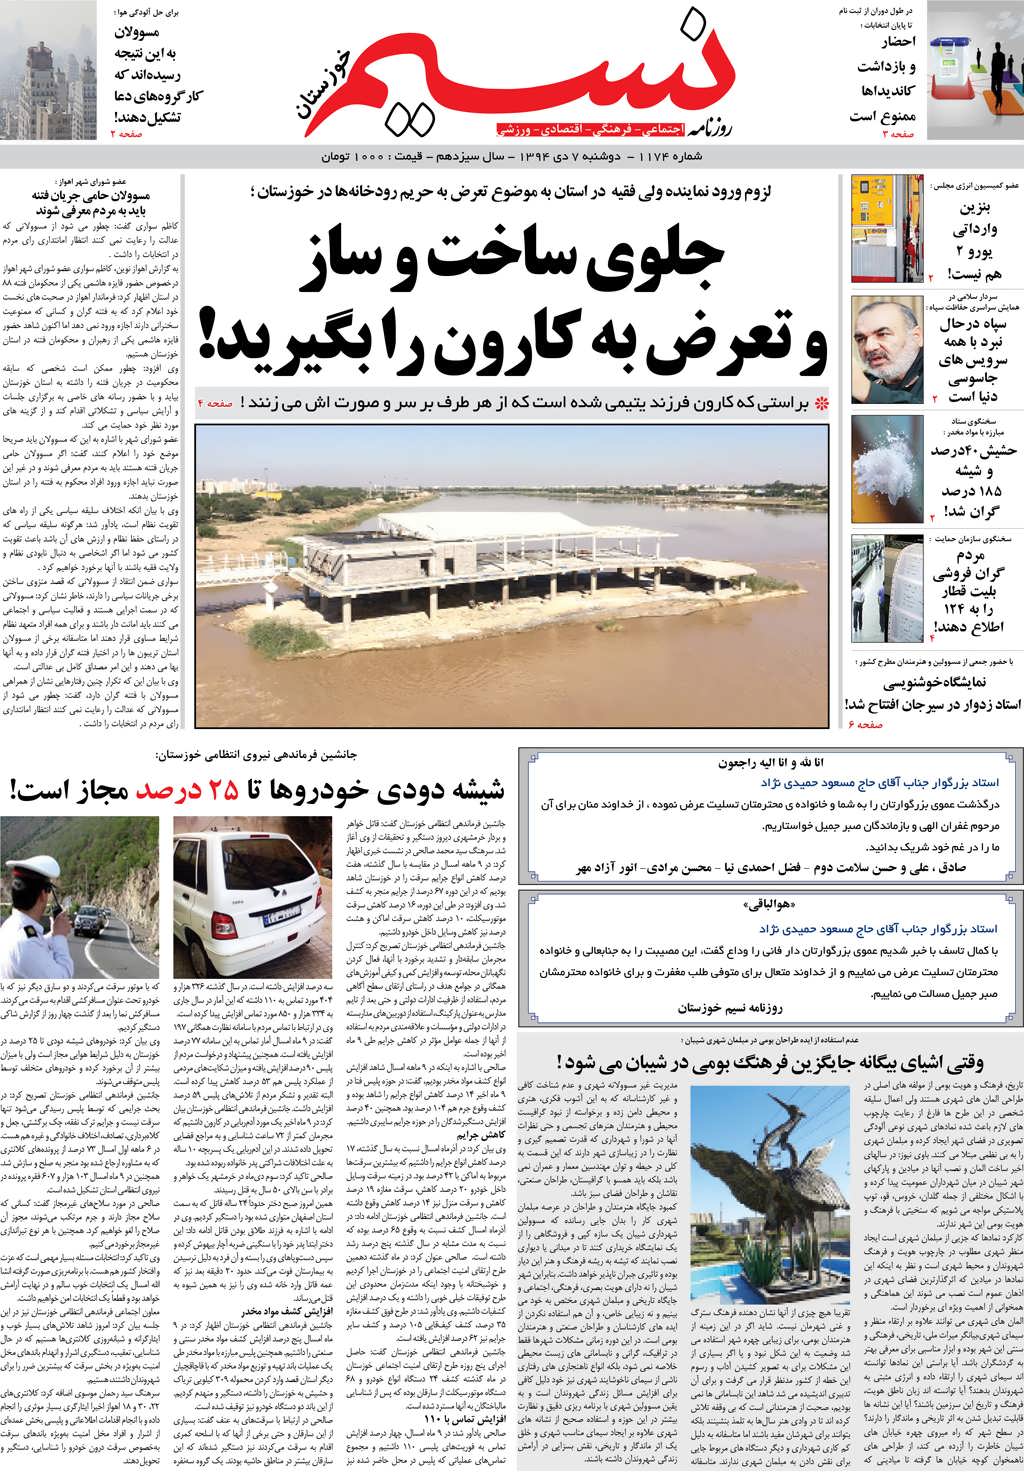 صفحه اصلی روزنامه نسیم شماره 1174